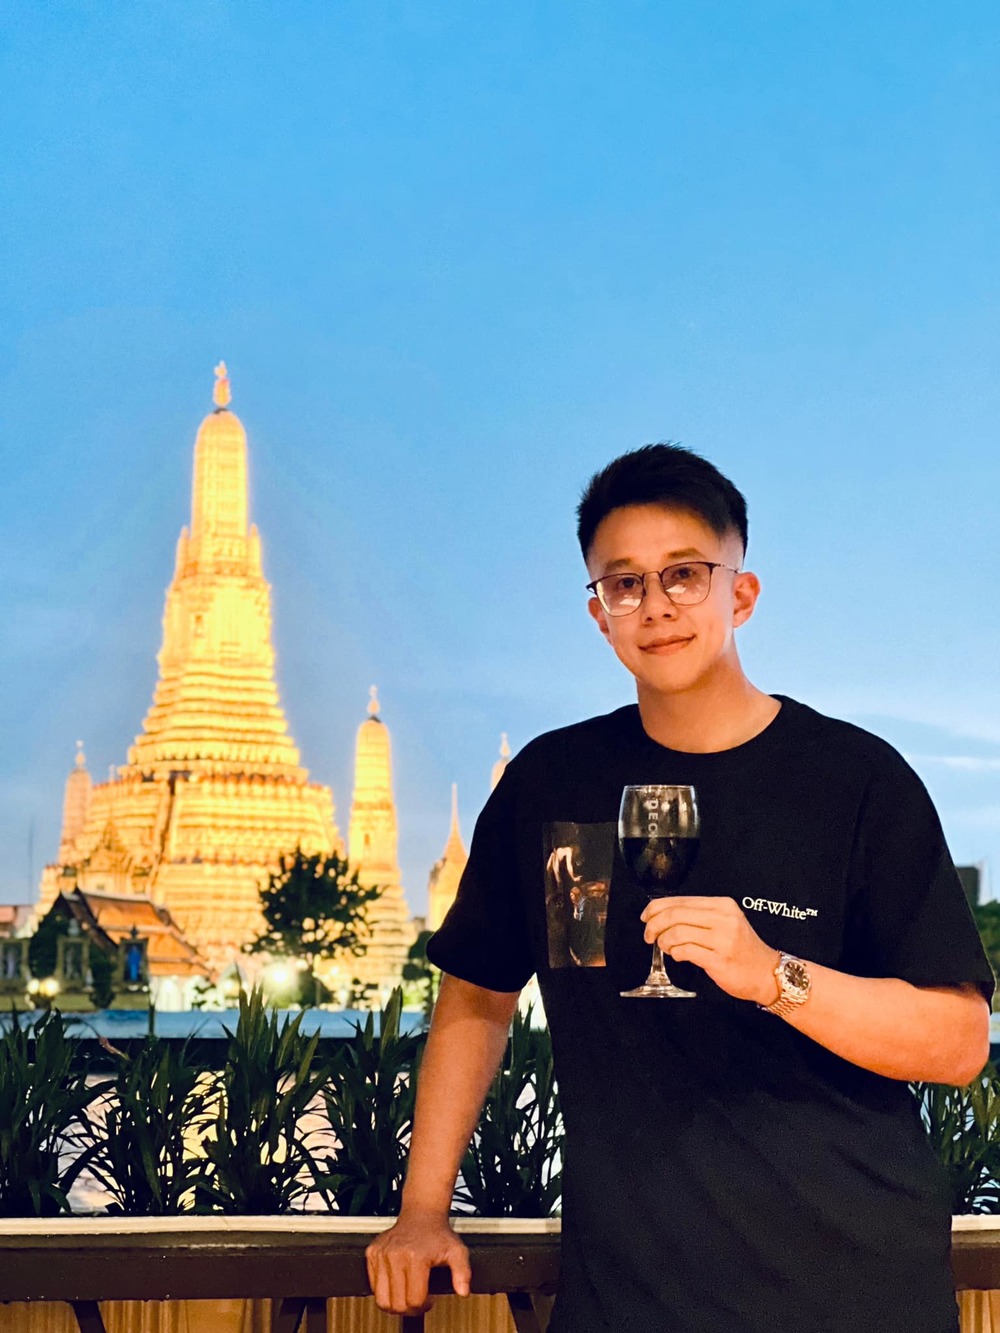  
Matt Liu đi du lịch Thái Lan không có bạn gái. (Ảnh: FB Matt Liu) - Tin sao Viet - Tin tuc sao Viet - Scandal sao Viet - Tin tuc cua Sao - Tin cua Sao